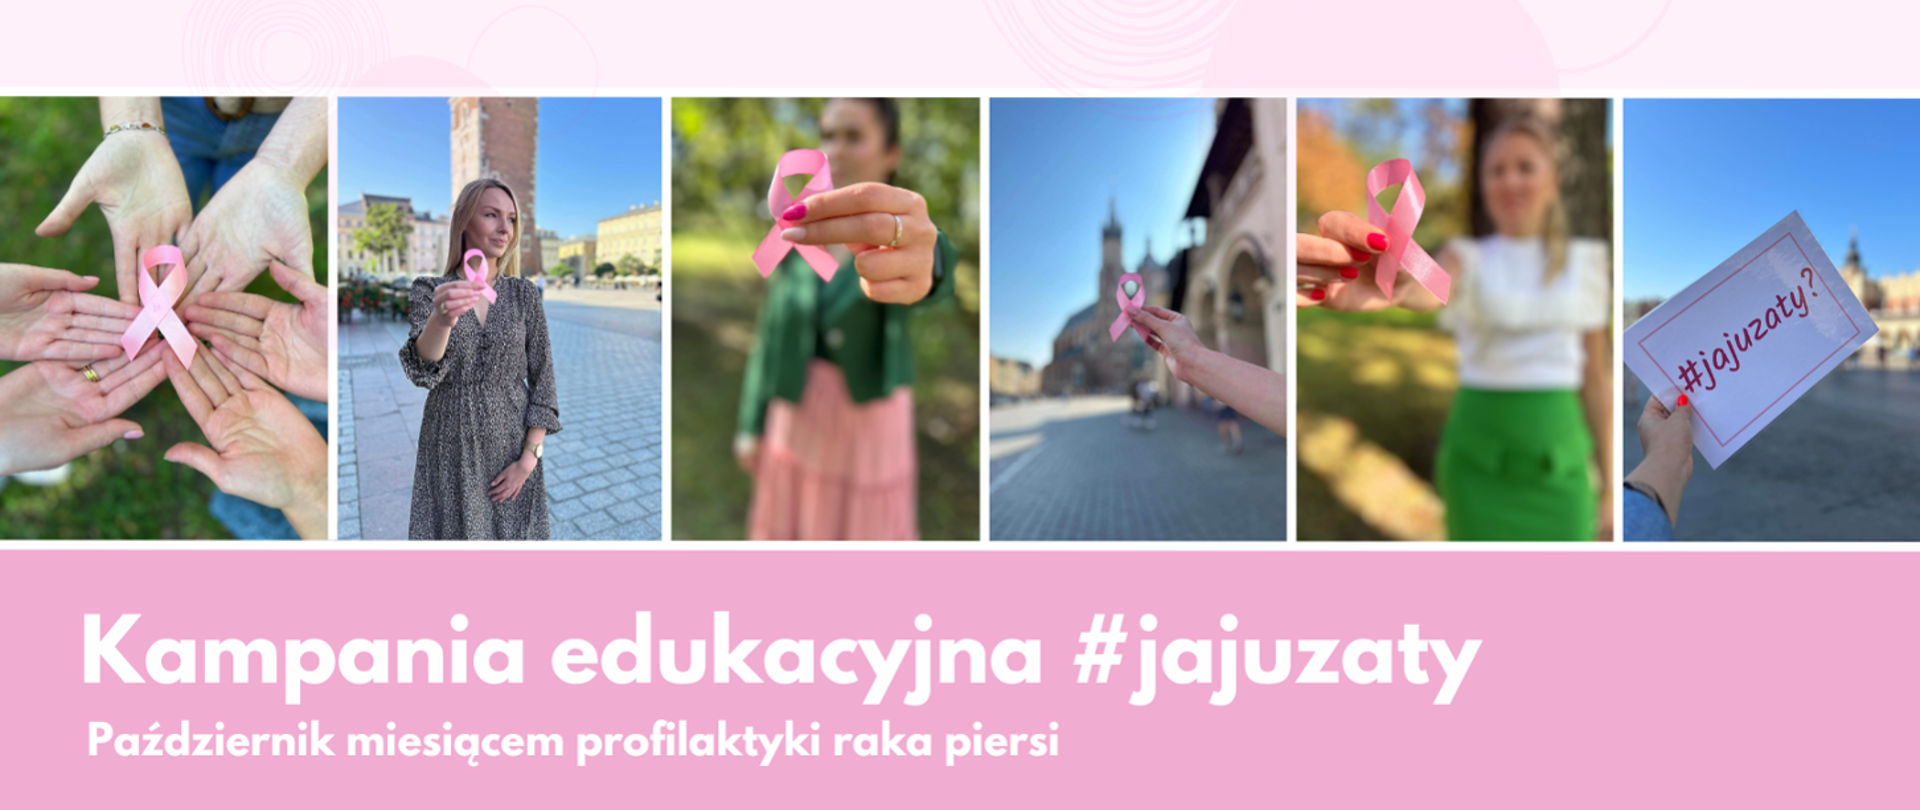 Na zdjęciu widnieją kobiety, które trzymają w ręku różową wstążkę, widnieje napis Kampania edukacyjna #jajuzaty październik miesiącem profilaktyki raka piersi 